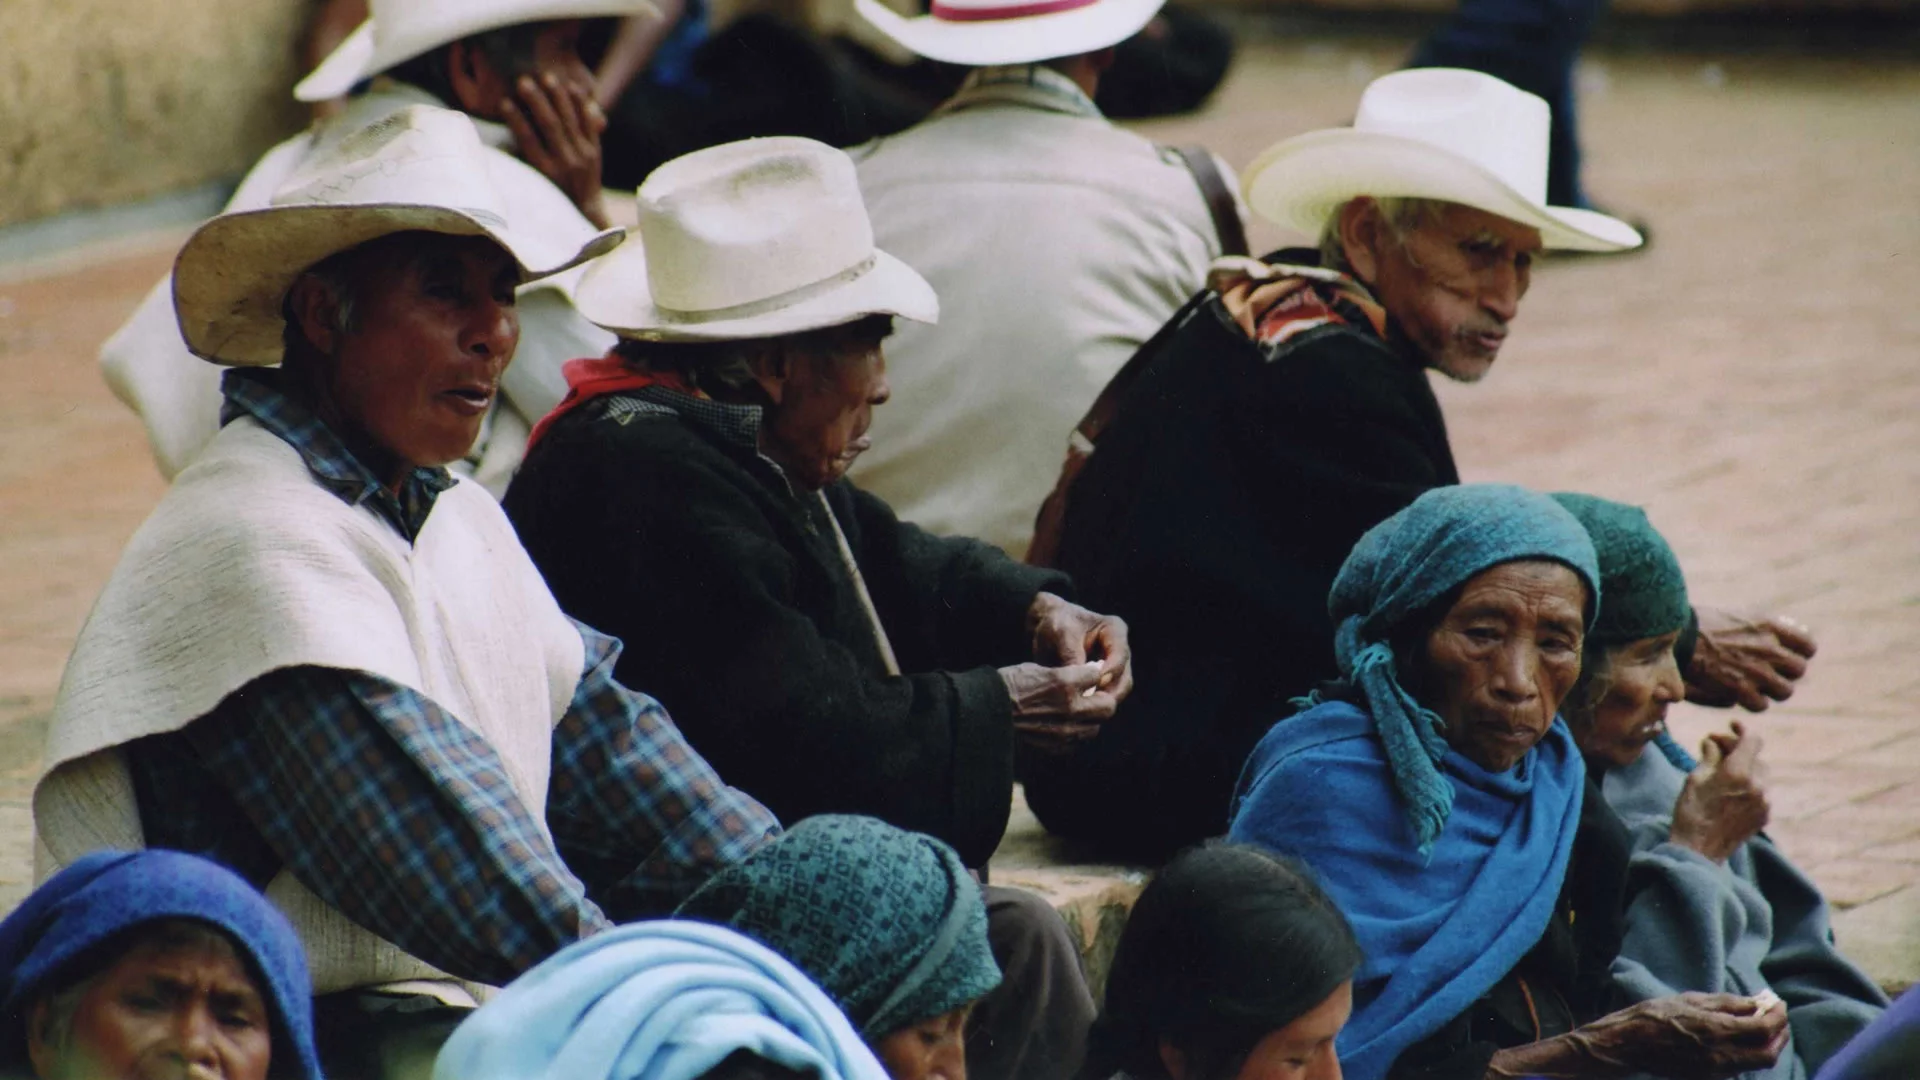 De Chiapas, een inheemse groep van Mexico